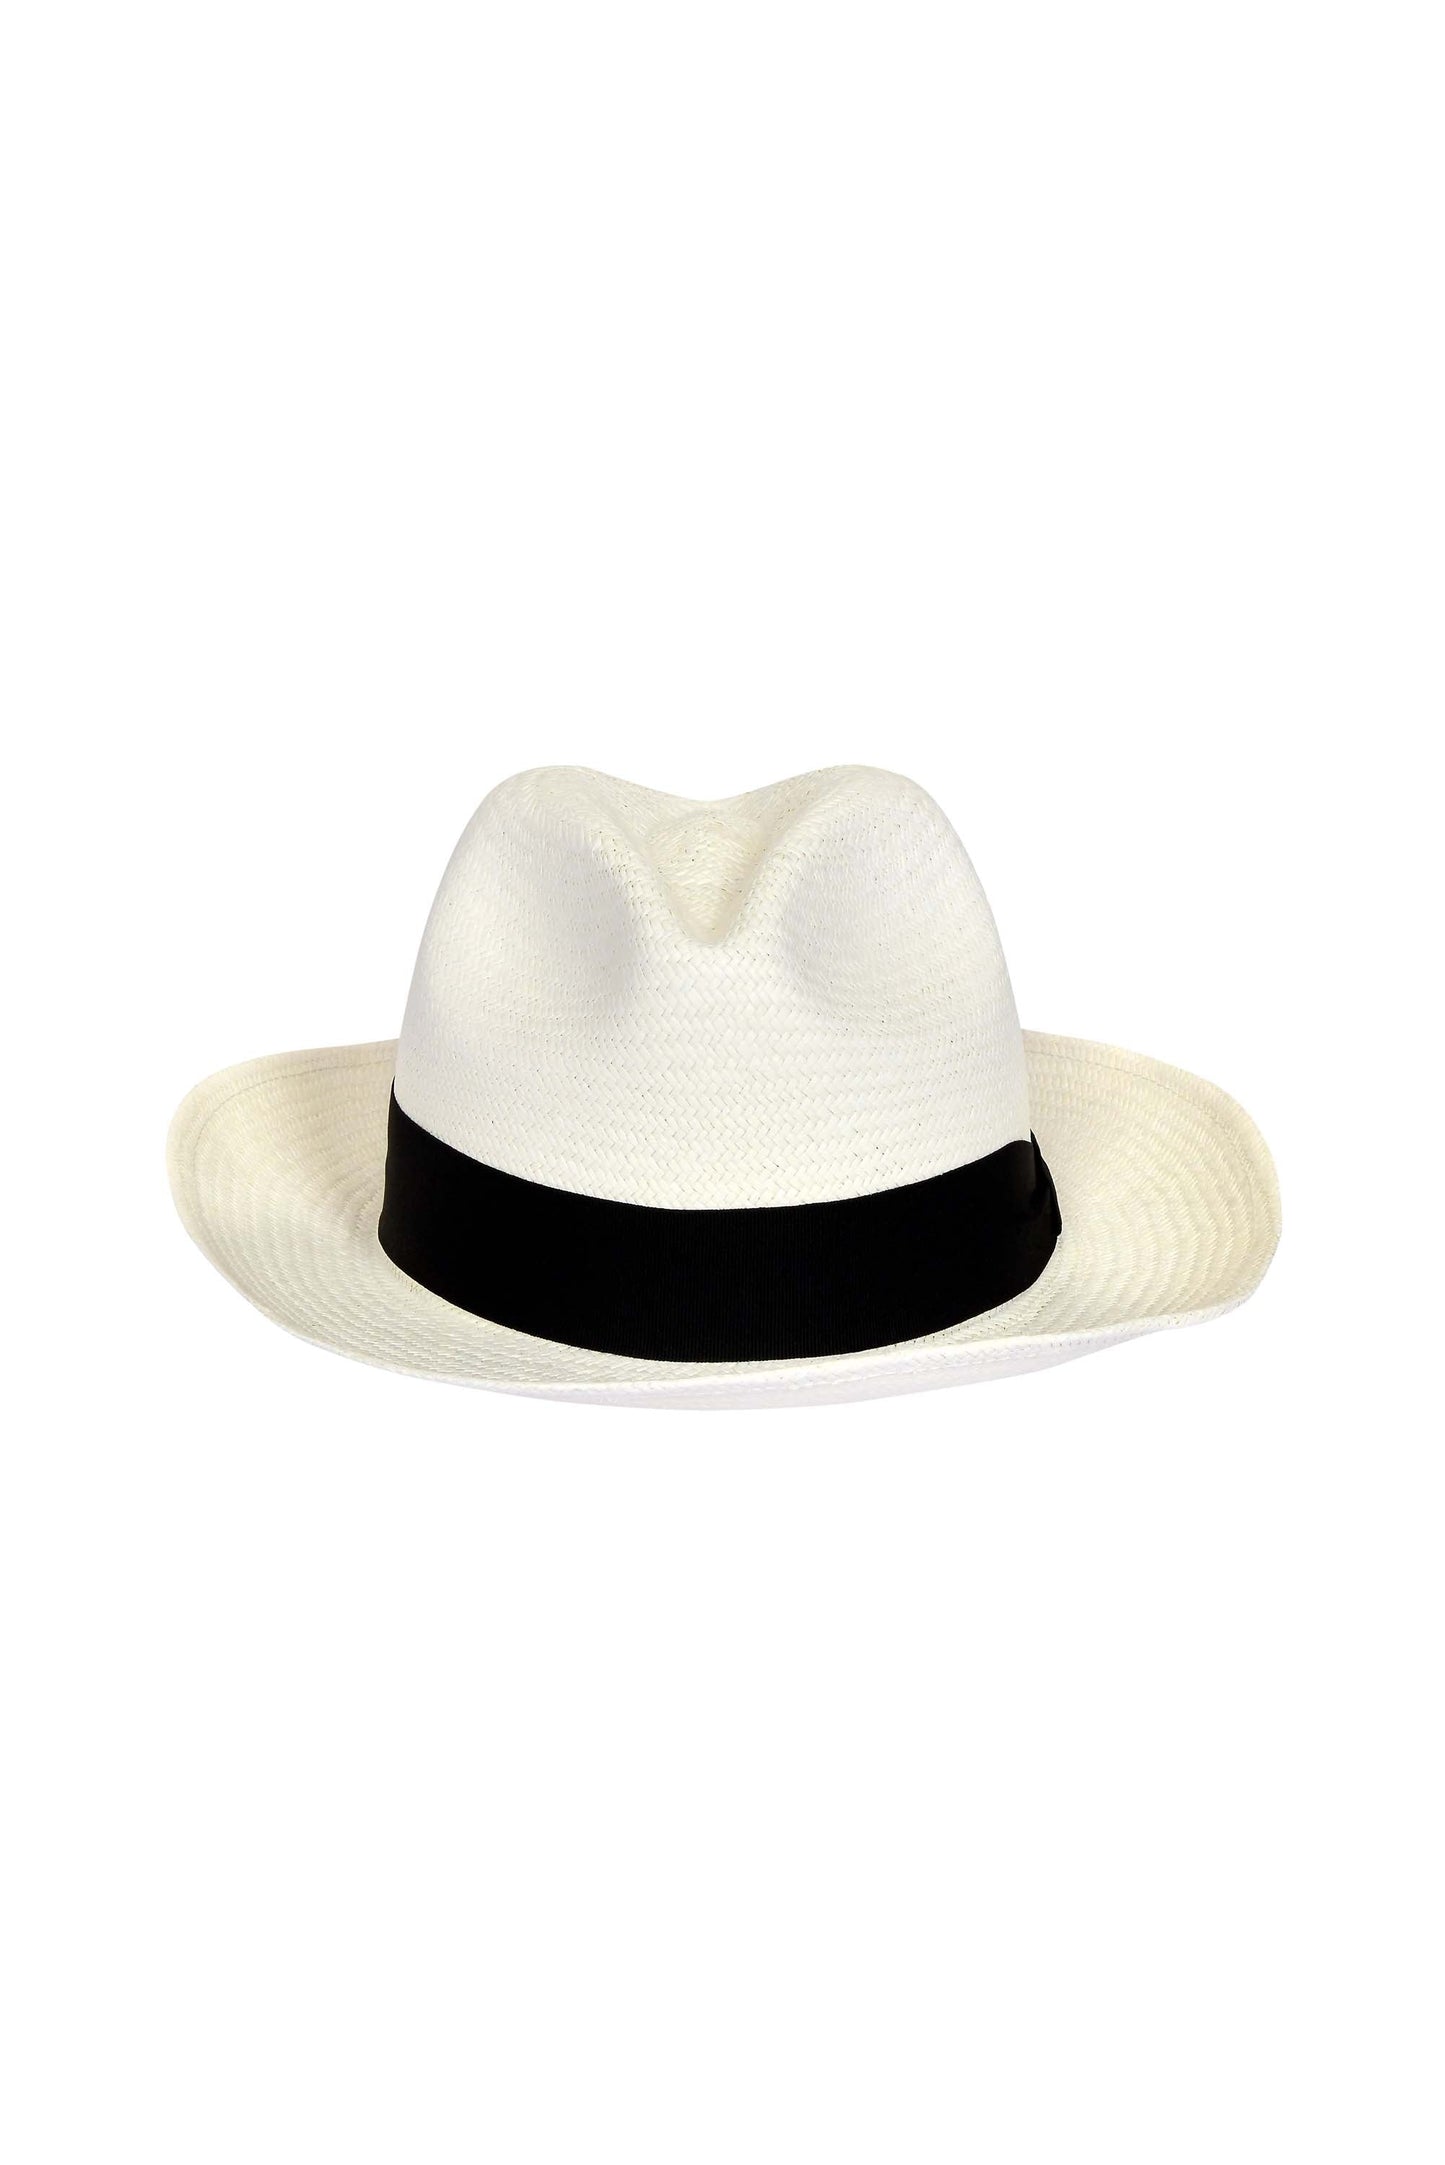 Roosevelt Hat Black